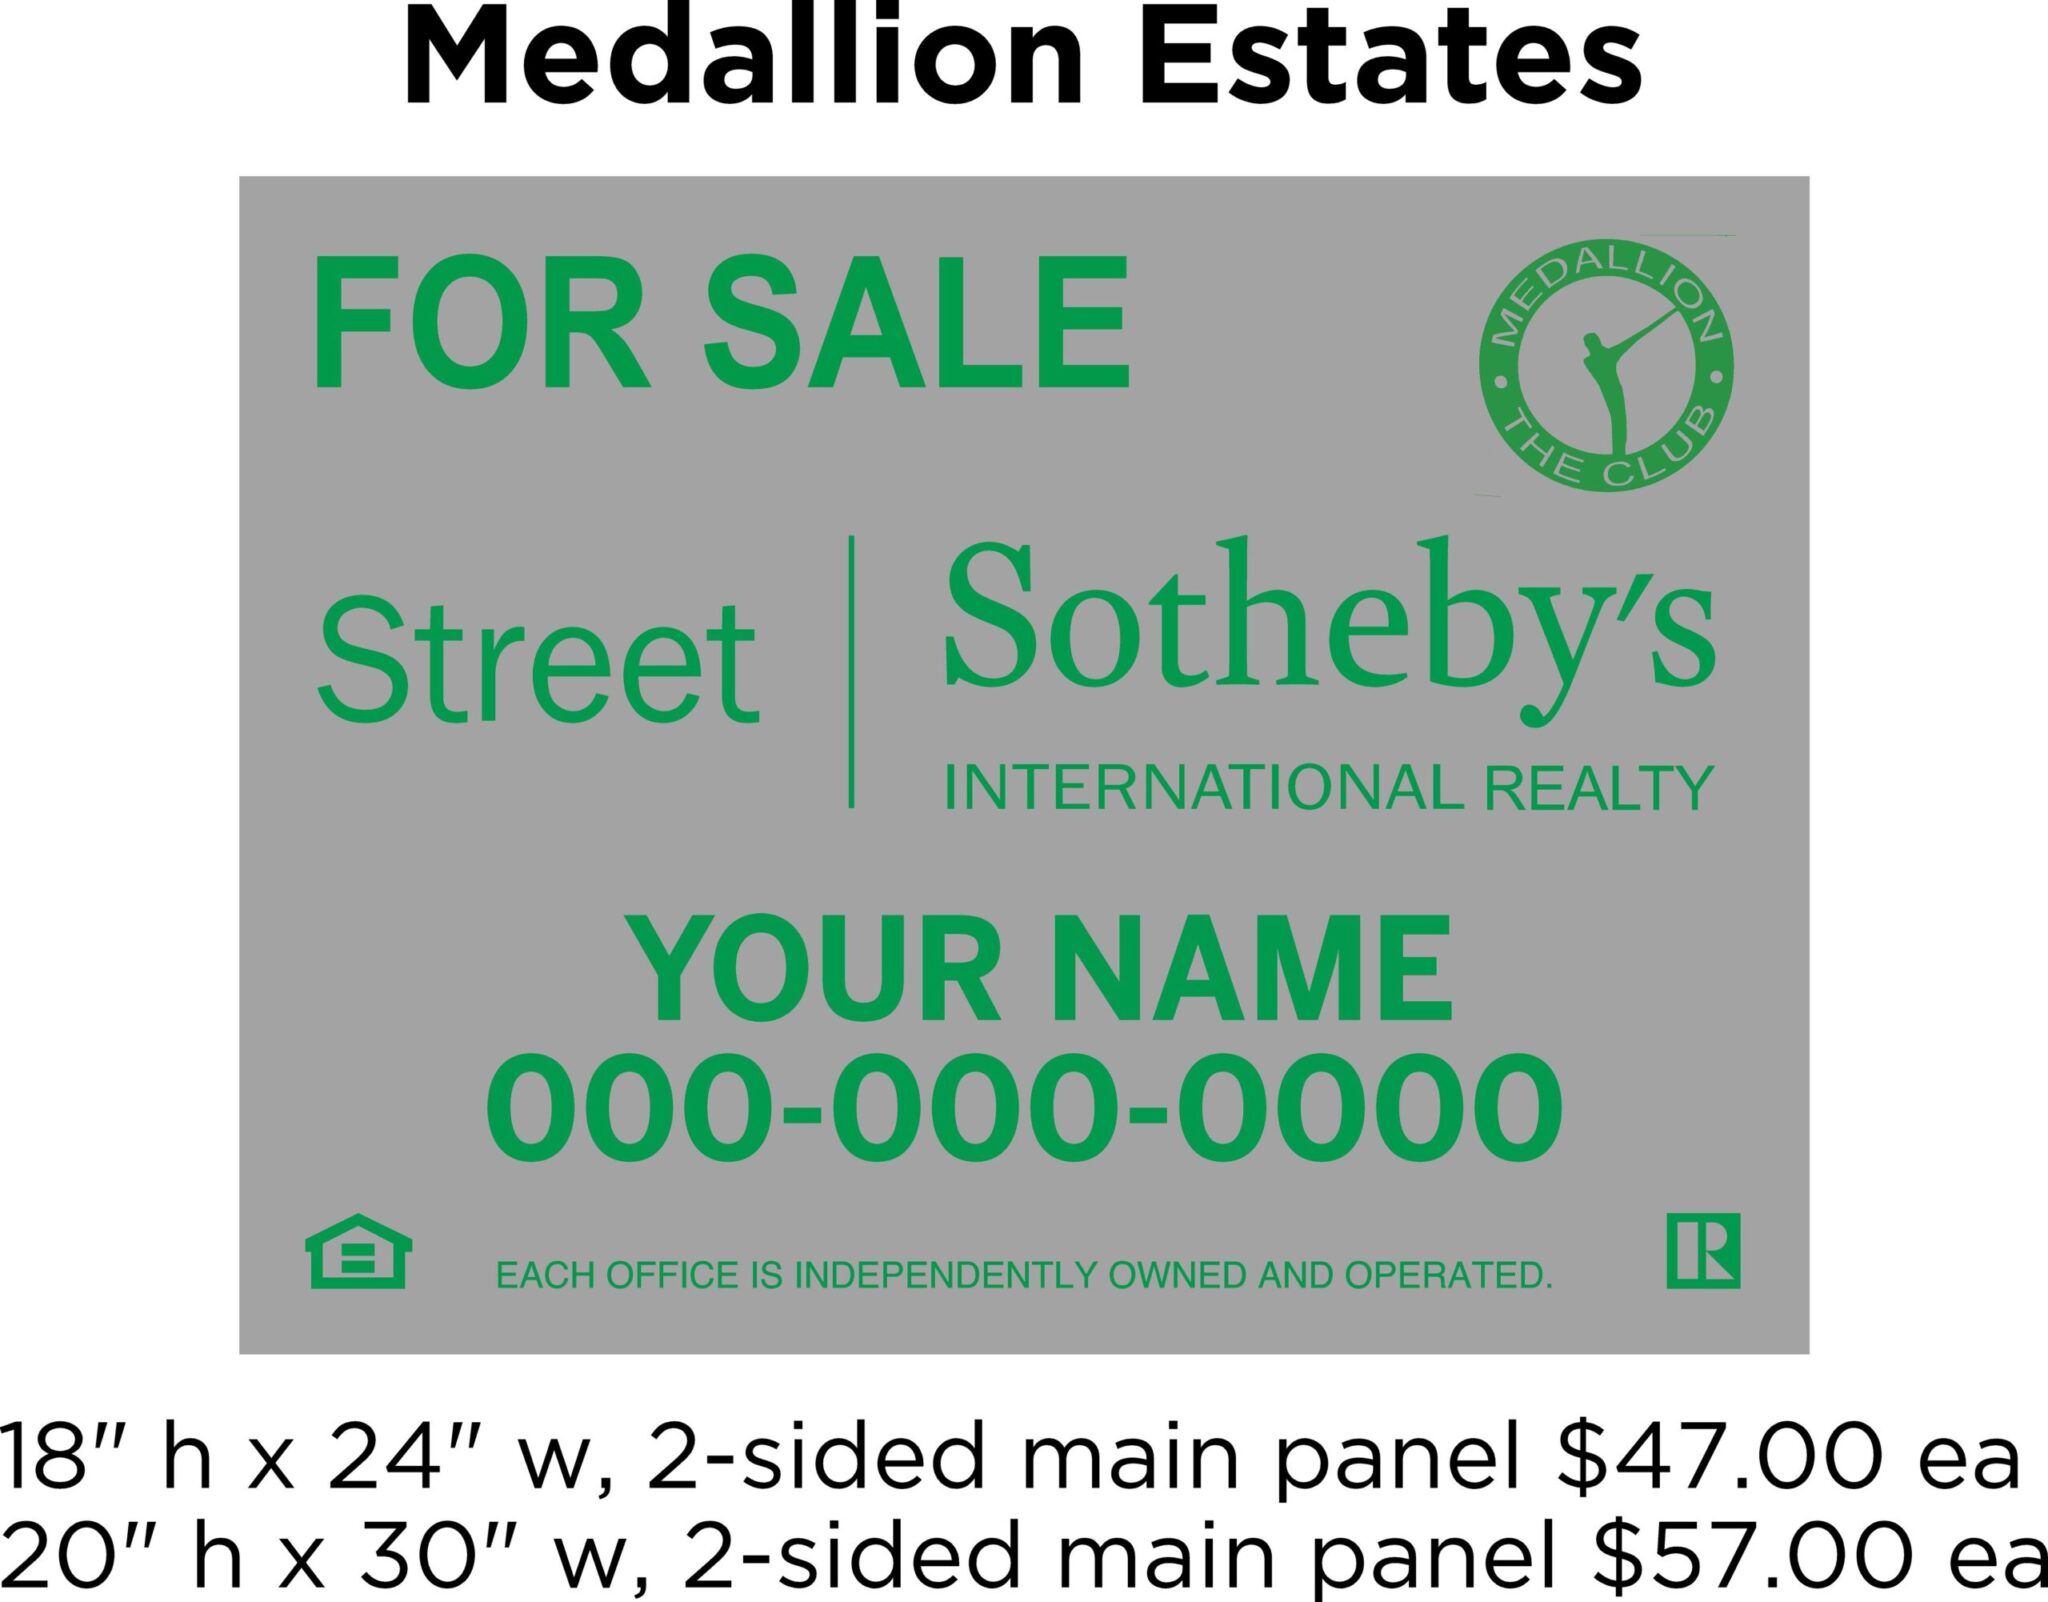 Medallion Estates